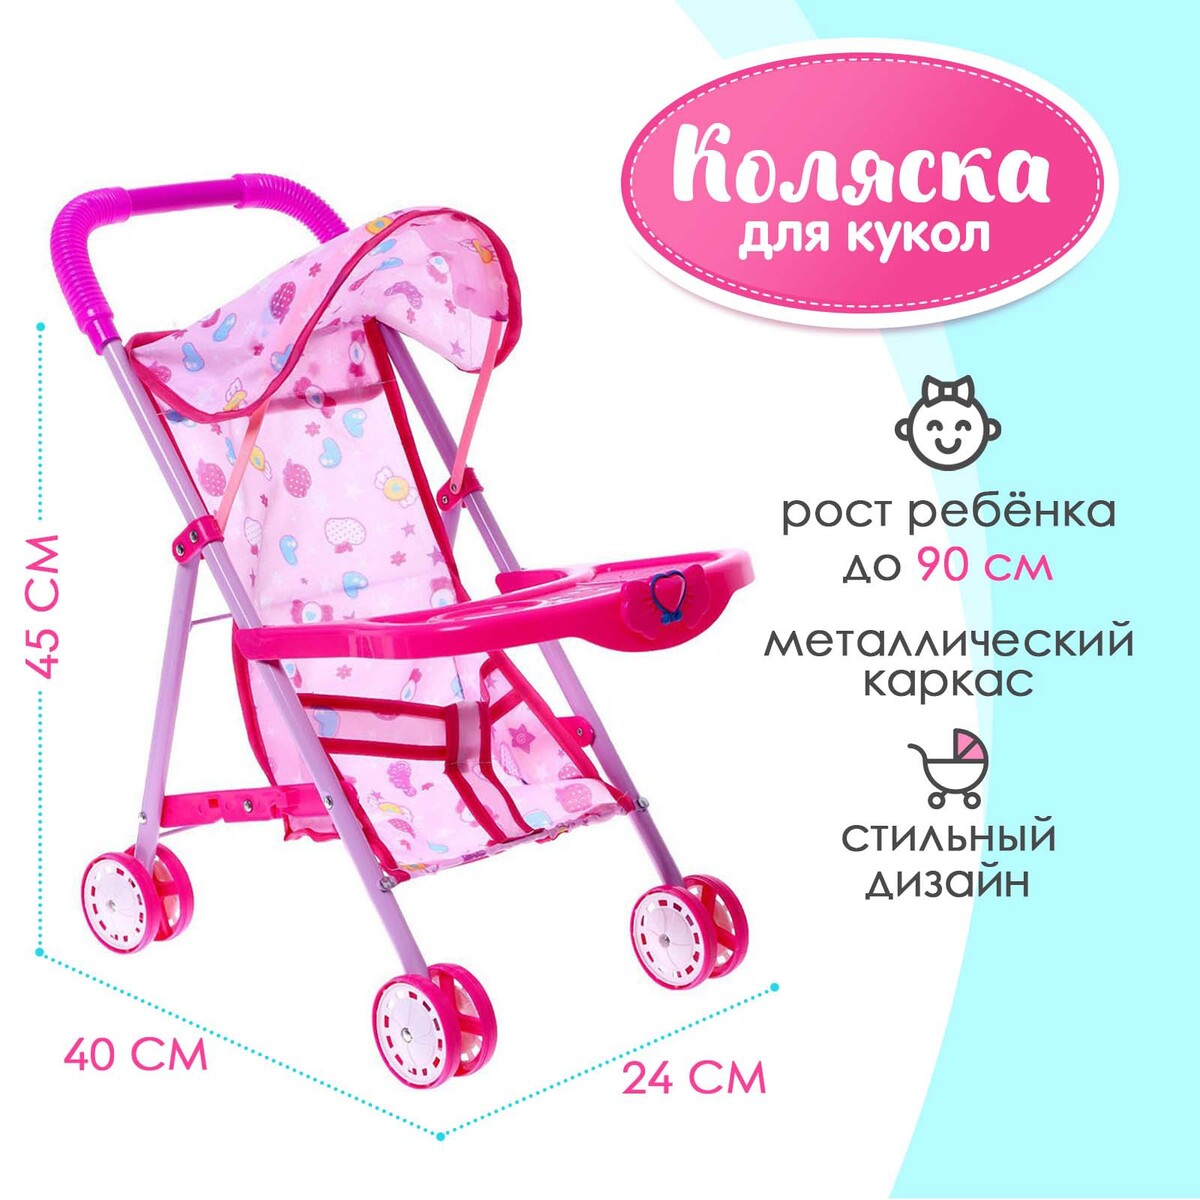 Коляска для кукол, металлический каркас, летняя коляска для кукол универсальная с корзиной металлический каркас розовый